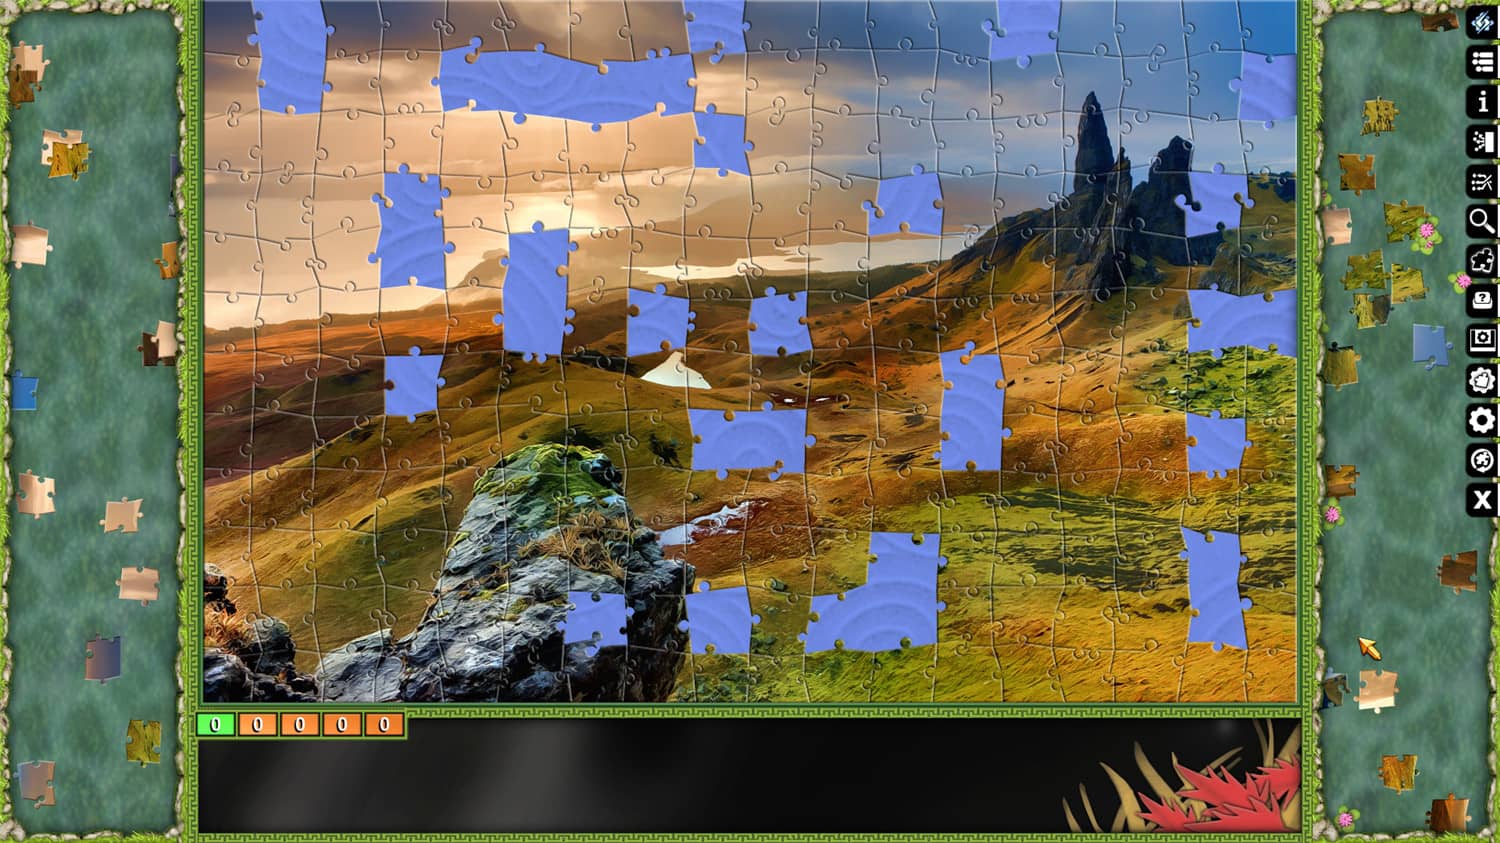 像素拼图：终极拼图/Pixel Puzzles Ultimate Jigsaw插图11